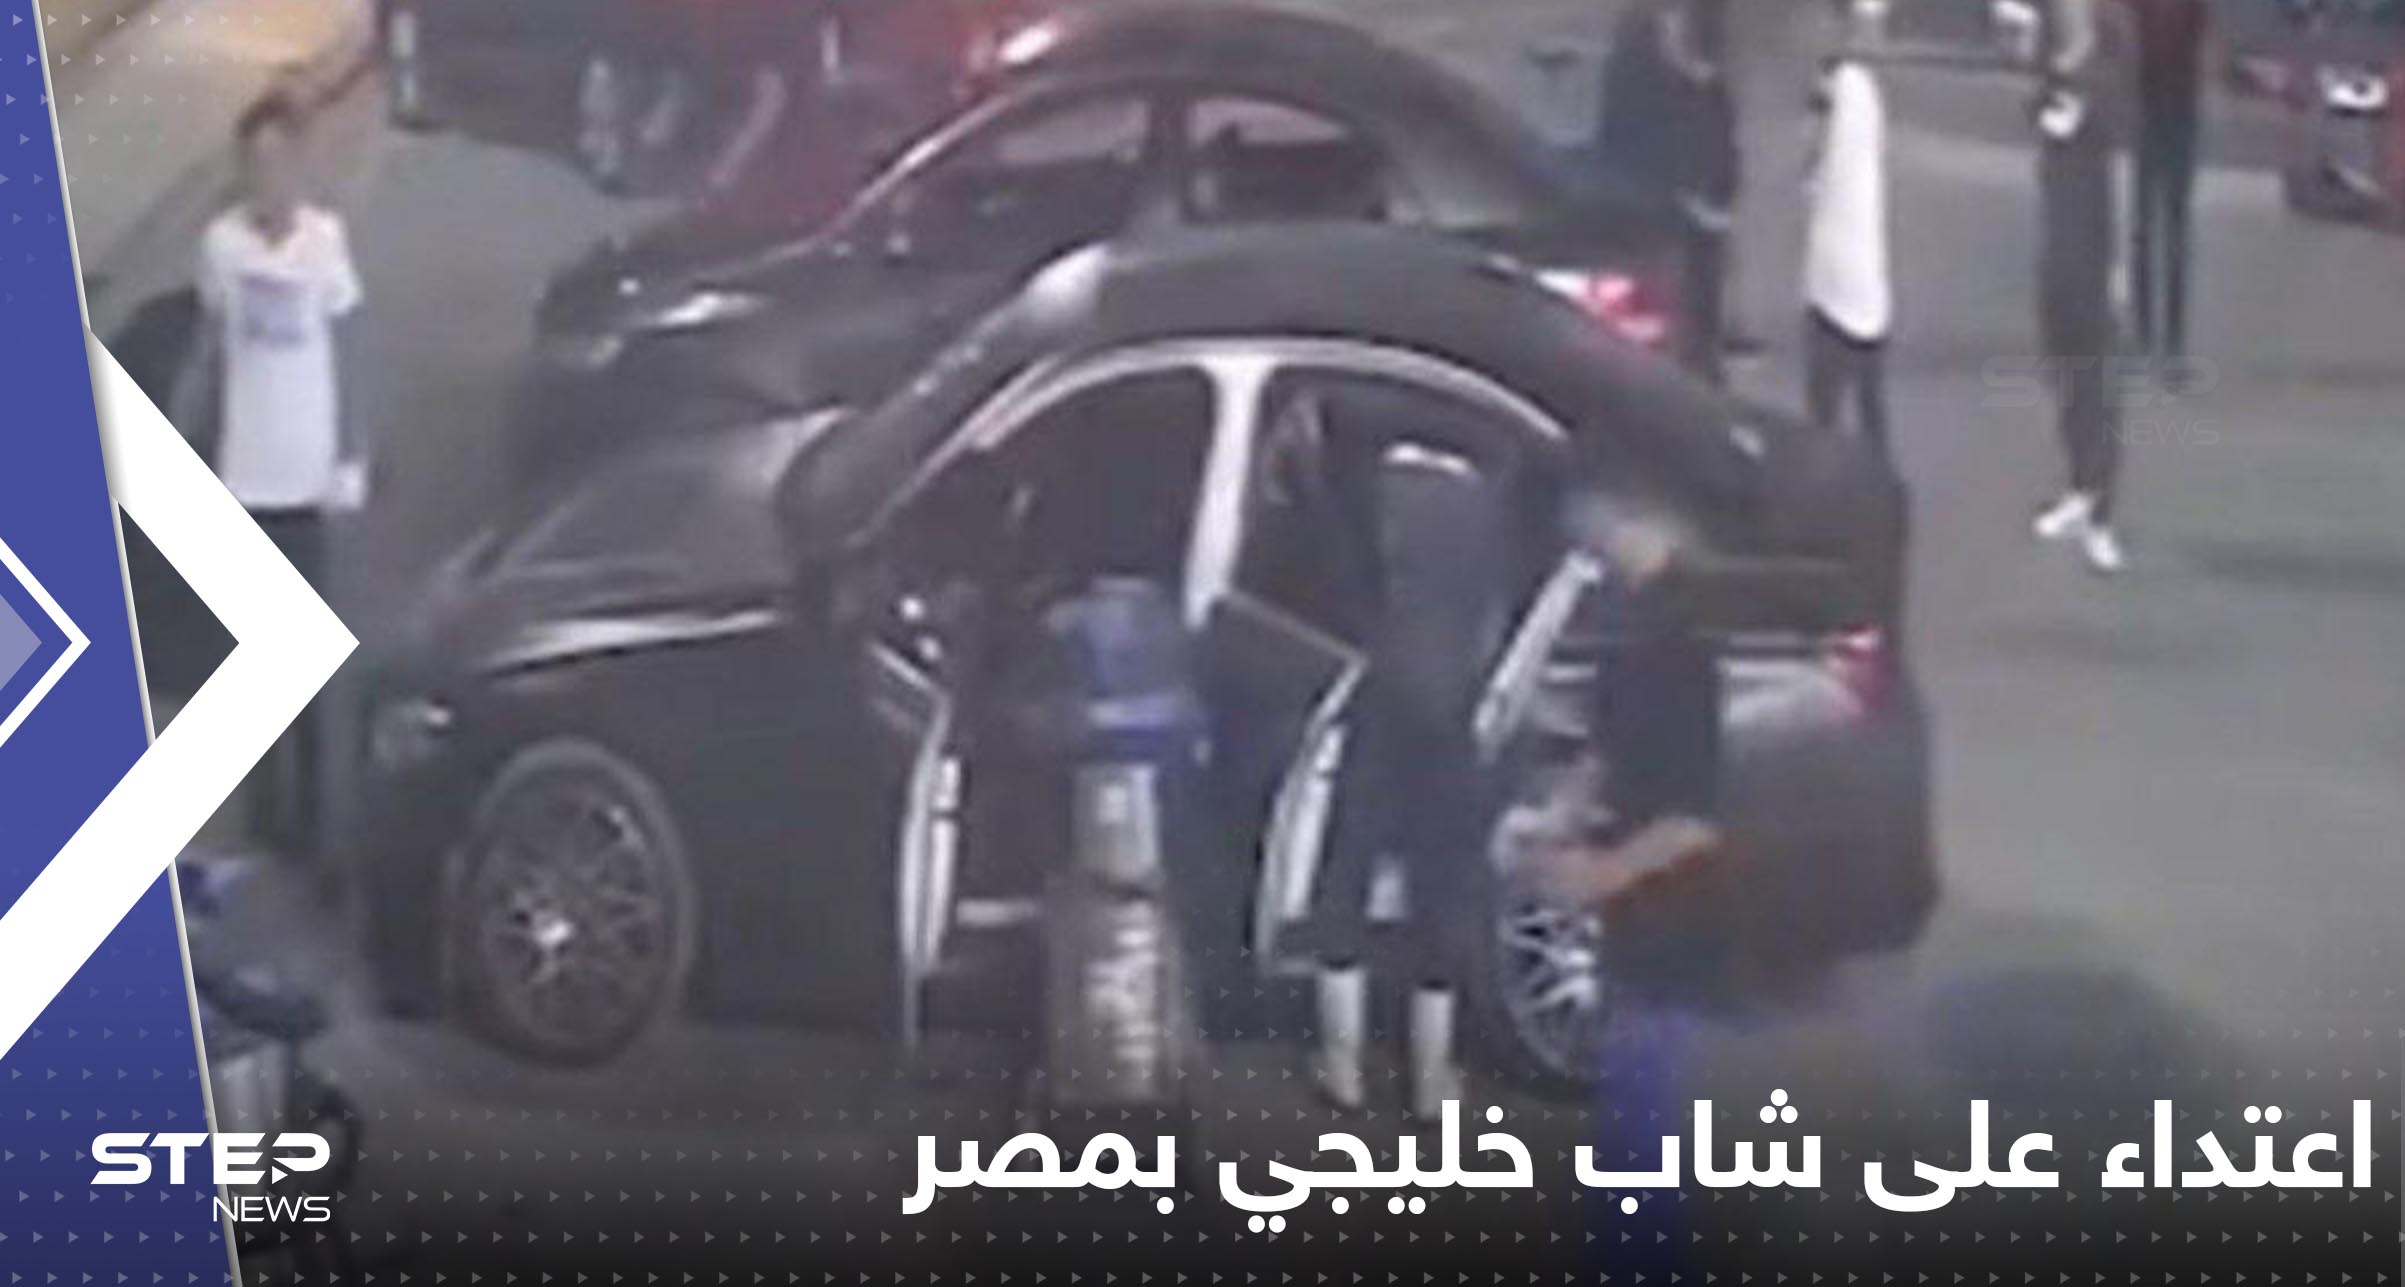 شاب خليجي يتعرض لاعتداء "وحشي" في مصر.. وتحرك رسمي من بلاده (فيديو)